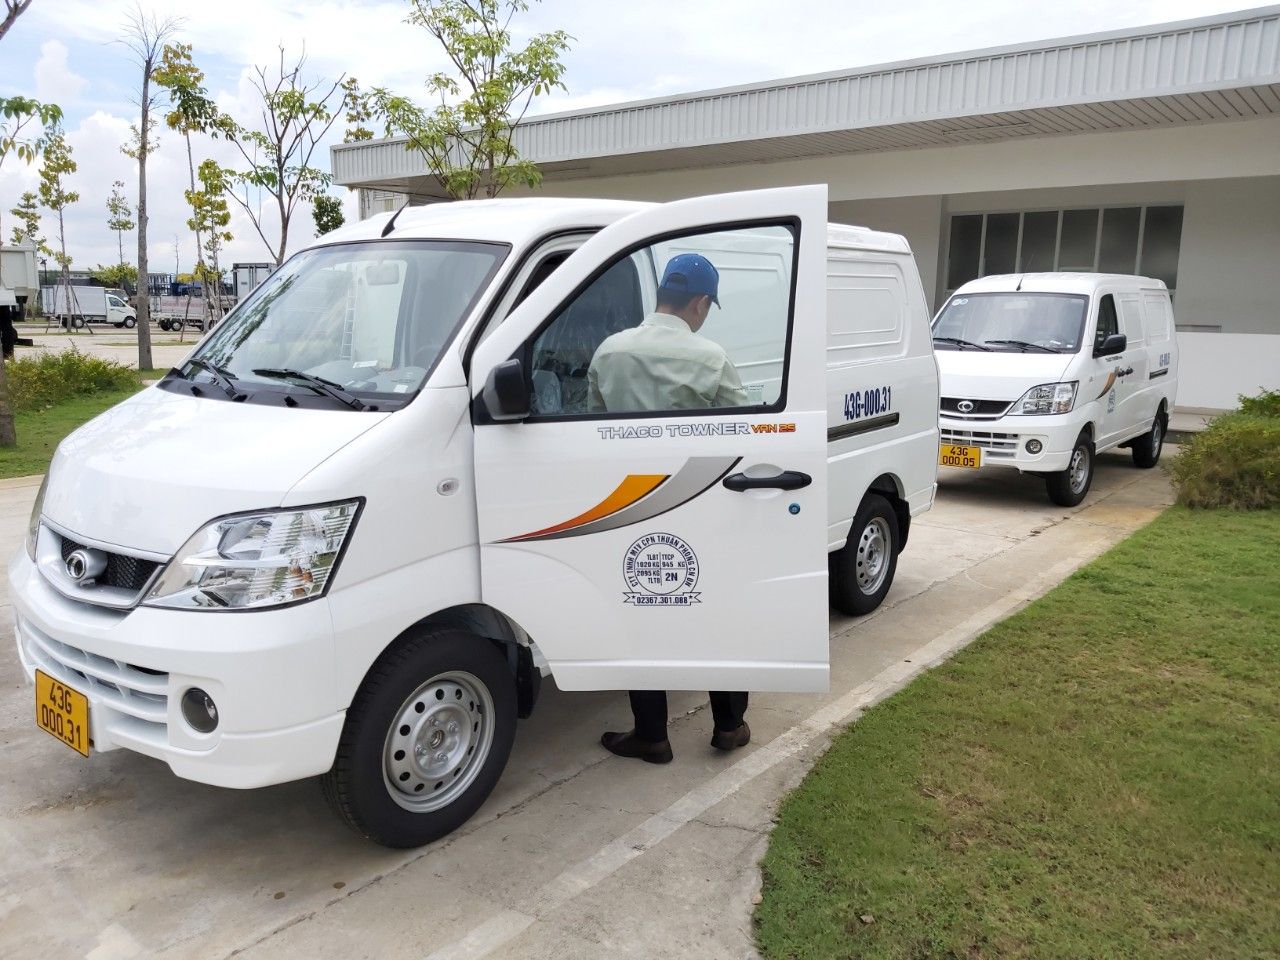 Thaco TOWNER 2021 - Giá xe tải Van 2 chỗ mới, hỗ trợ mua góp